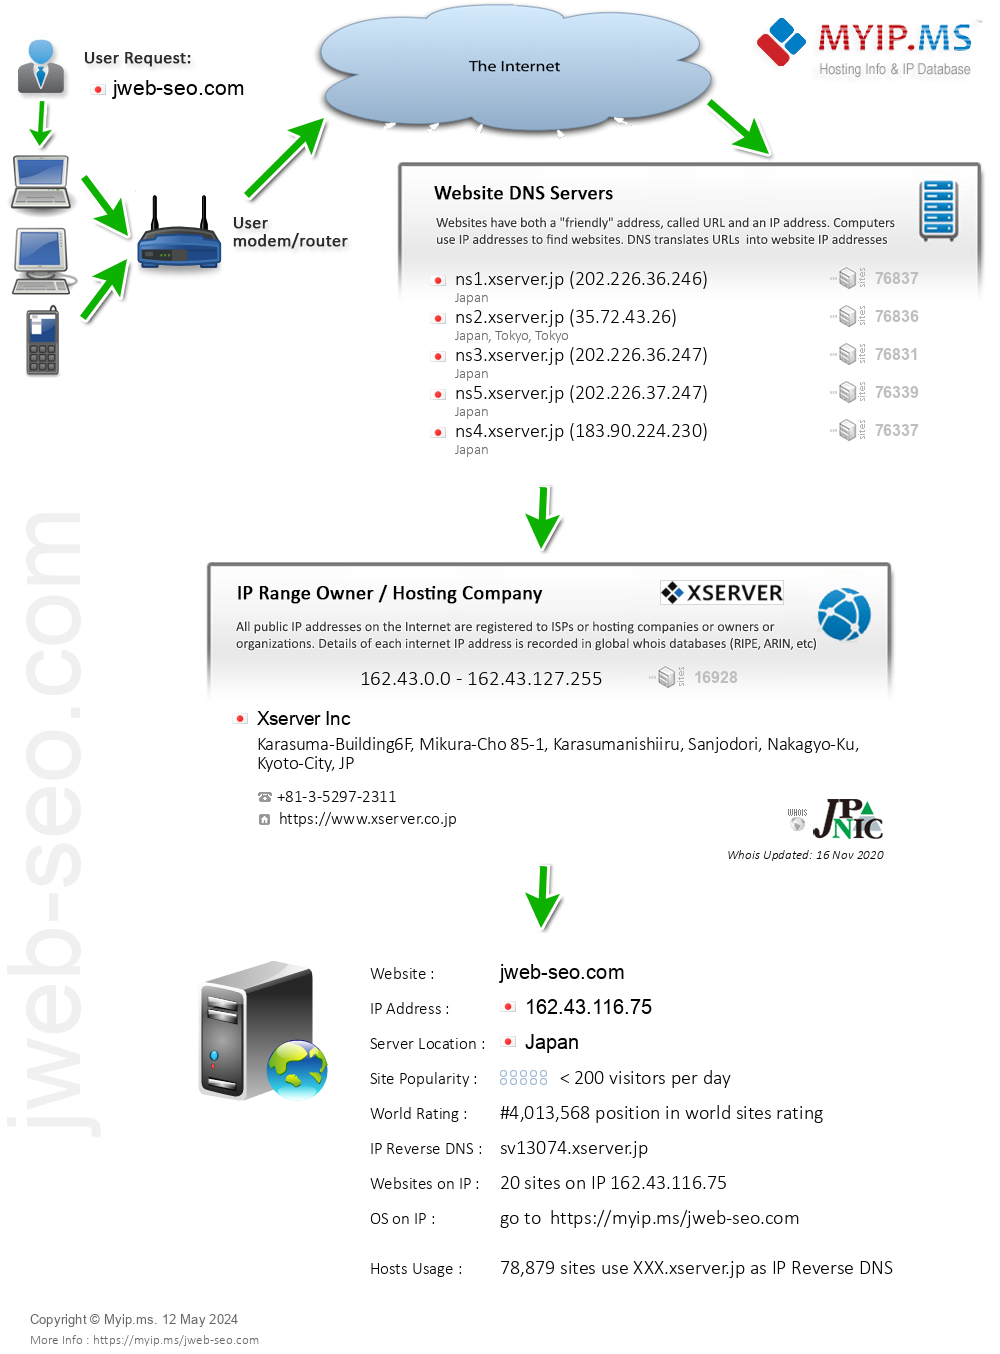 Jweb-seo.com - Website Hosting Visual IP Diagram